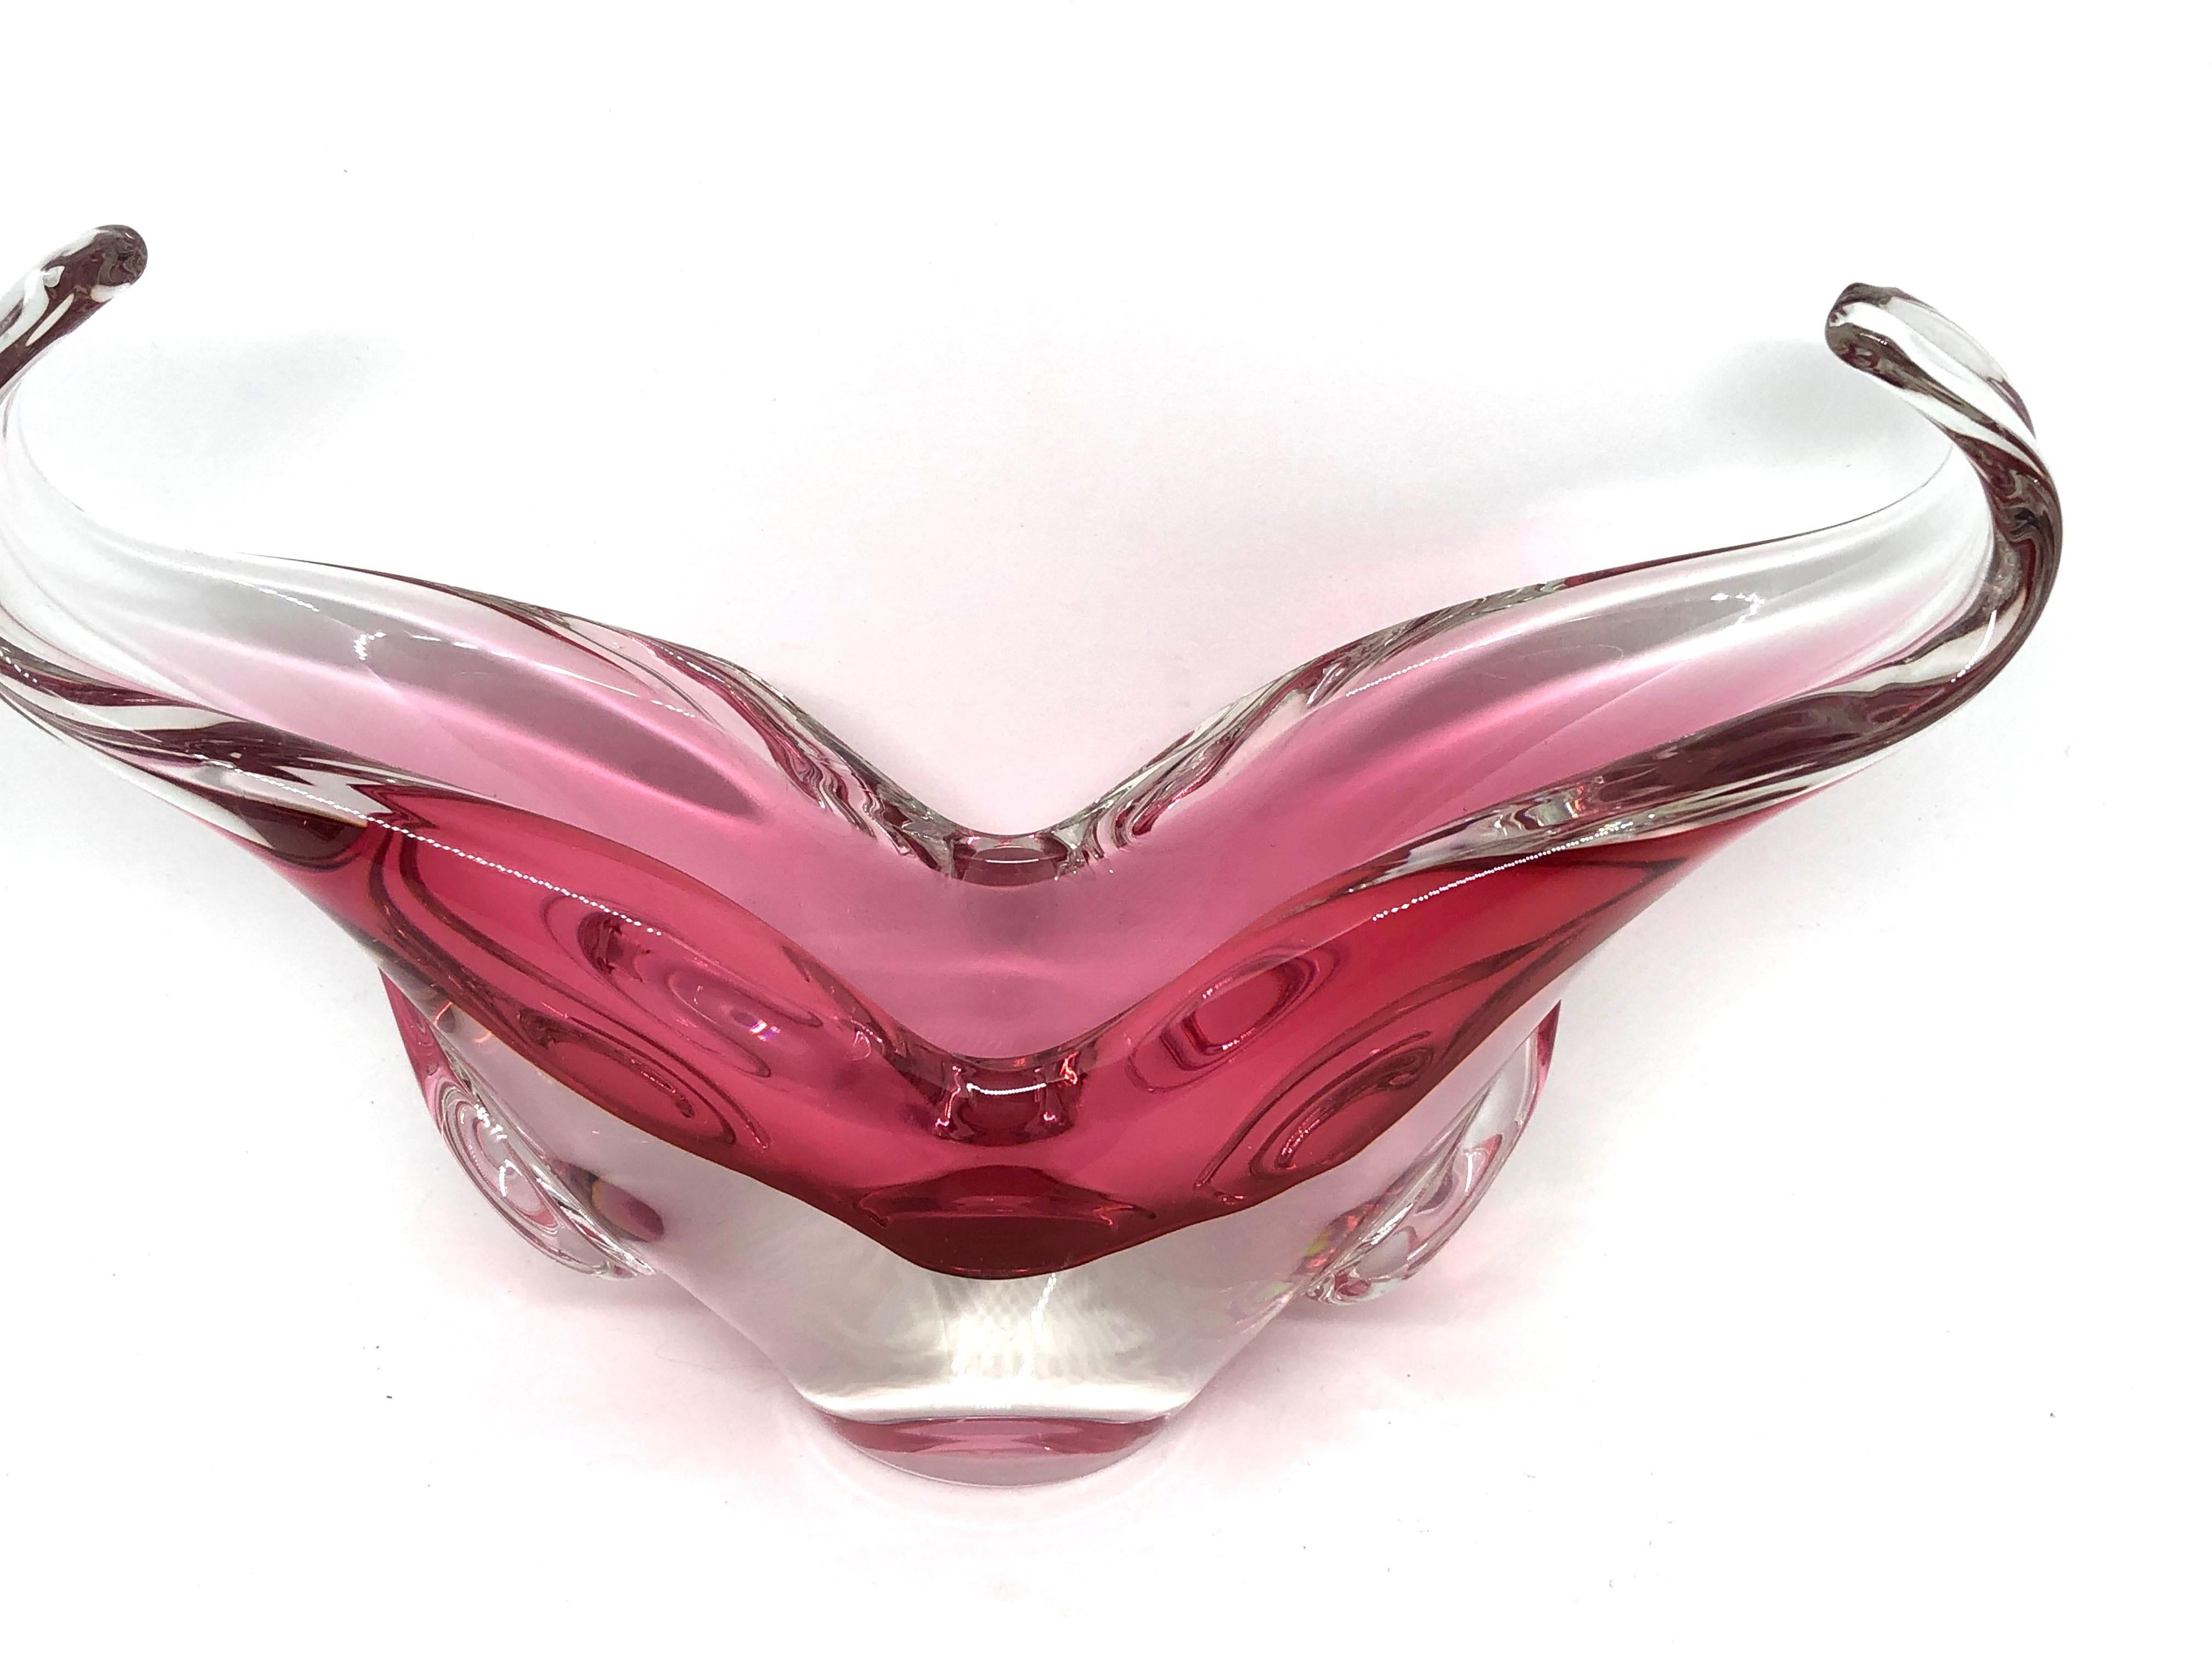 Un étonnant objet en verre de Murano vénitien au design inhabituel et d'une très belle couleur rose et claire. Une pièce très décorative utile comme pièce centrale, bol, bol à bonbons ou attrape-tout, Italie, années 1970.